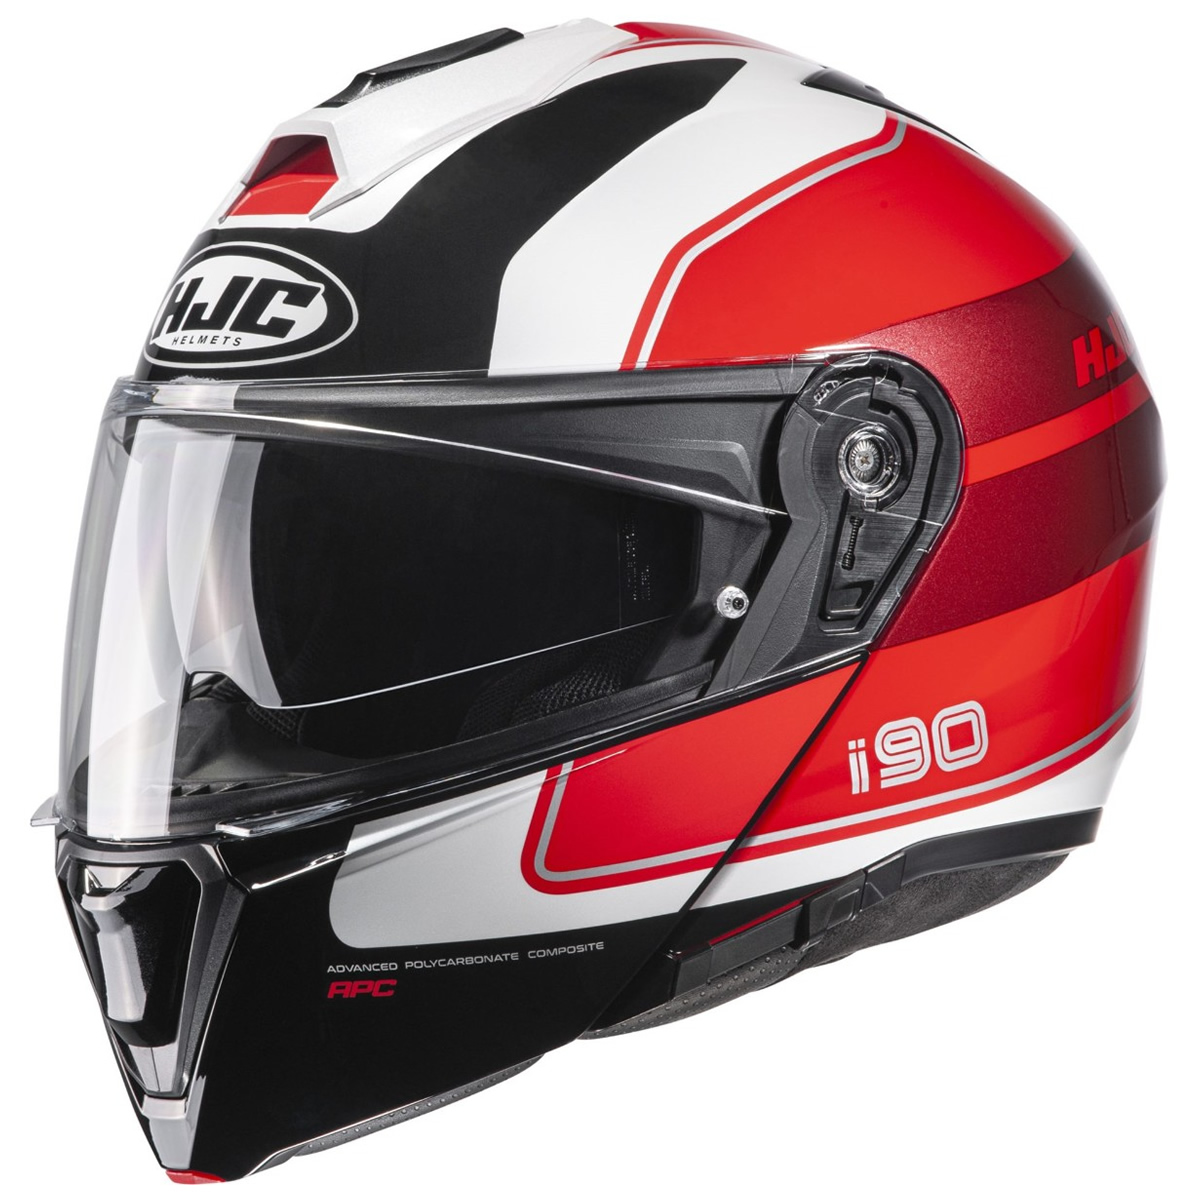 HJC Helm i90 Wasco MC1, schwarz-weiß-rot